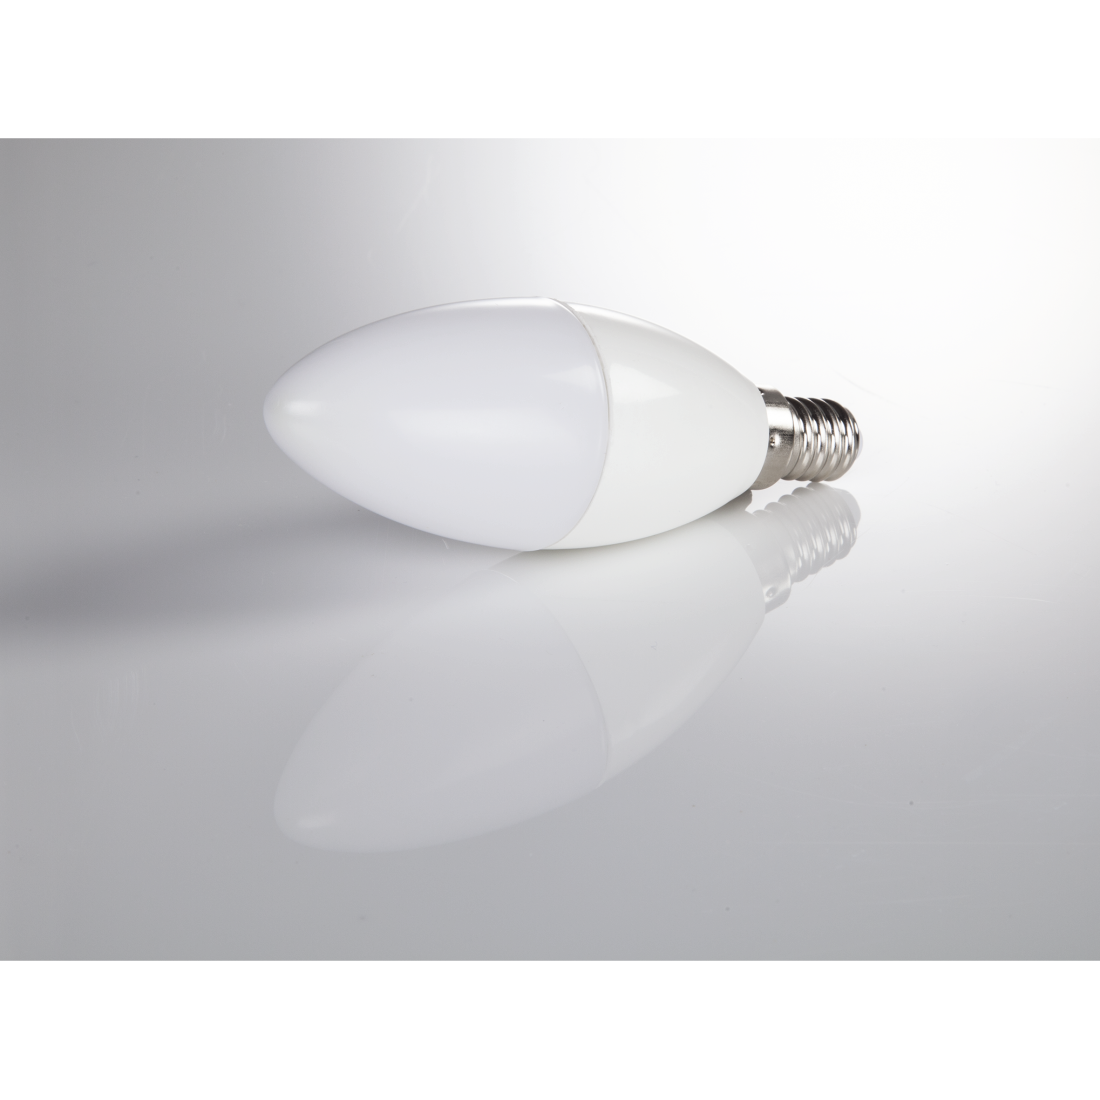 abx3 High-Res Image 3 - Xavax, Ampoule LED, E14, 806 lm rempl. 60 W, ampoule bougie, blanc chaud